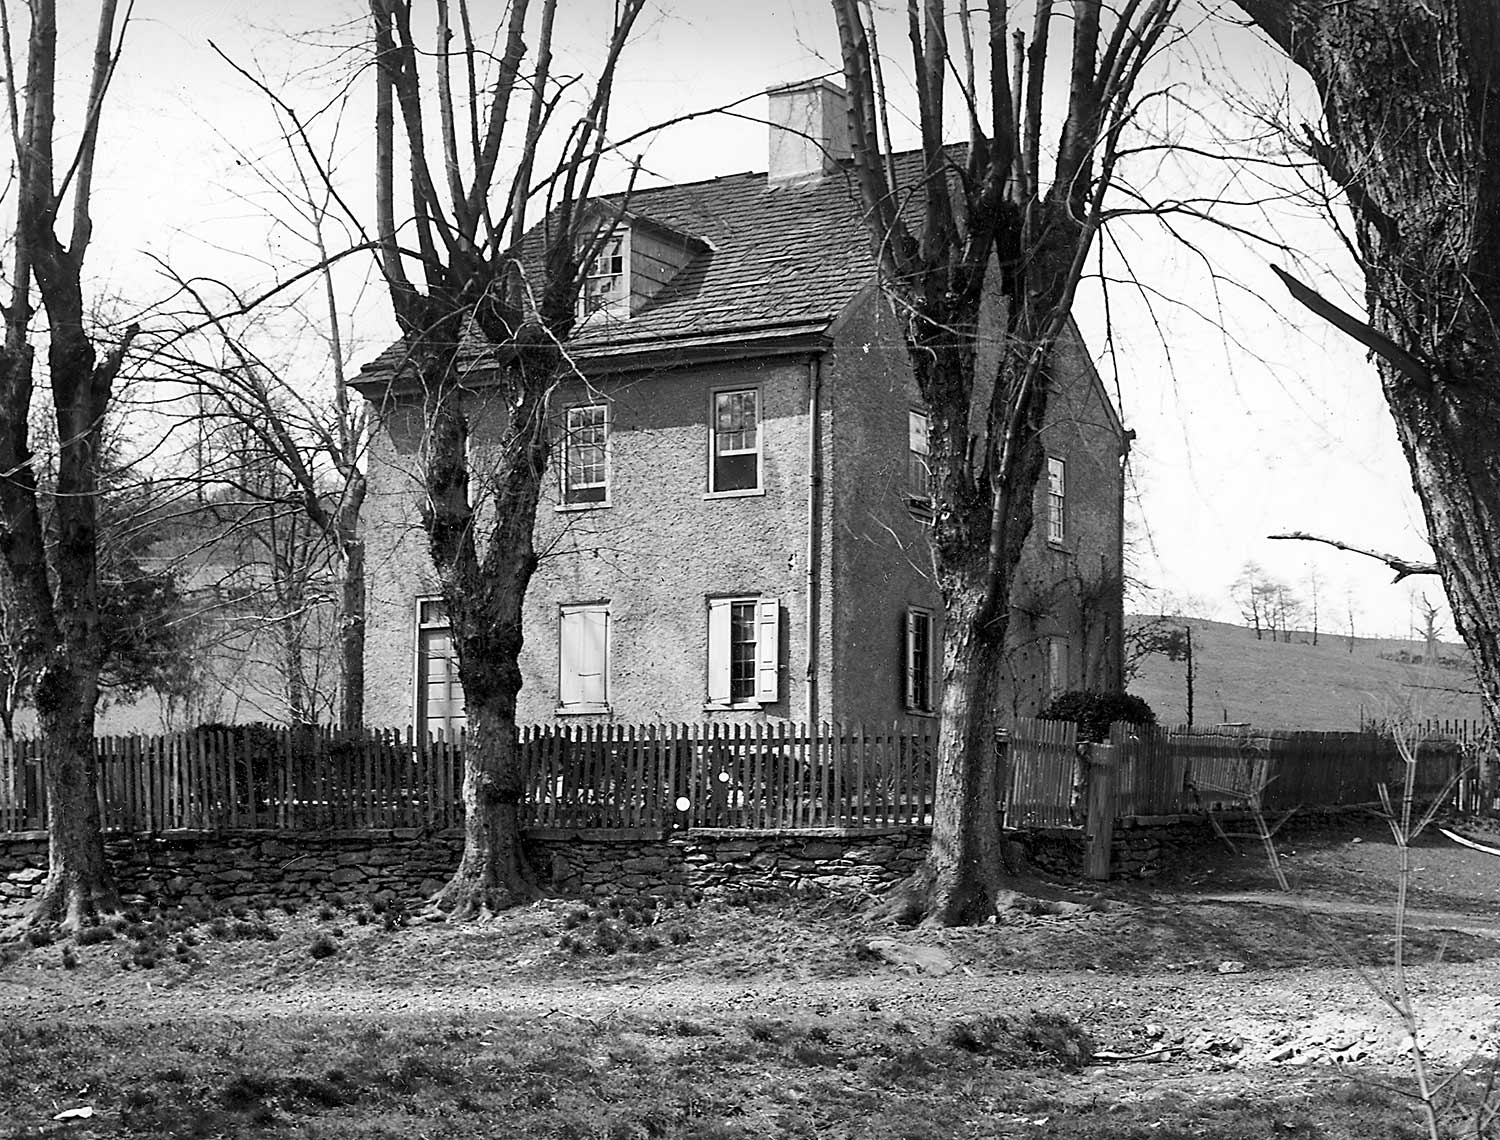 Jacob Rittenhouse home ca. 1900